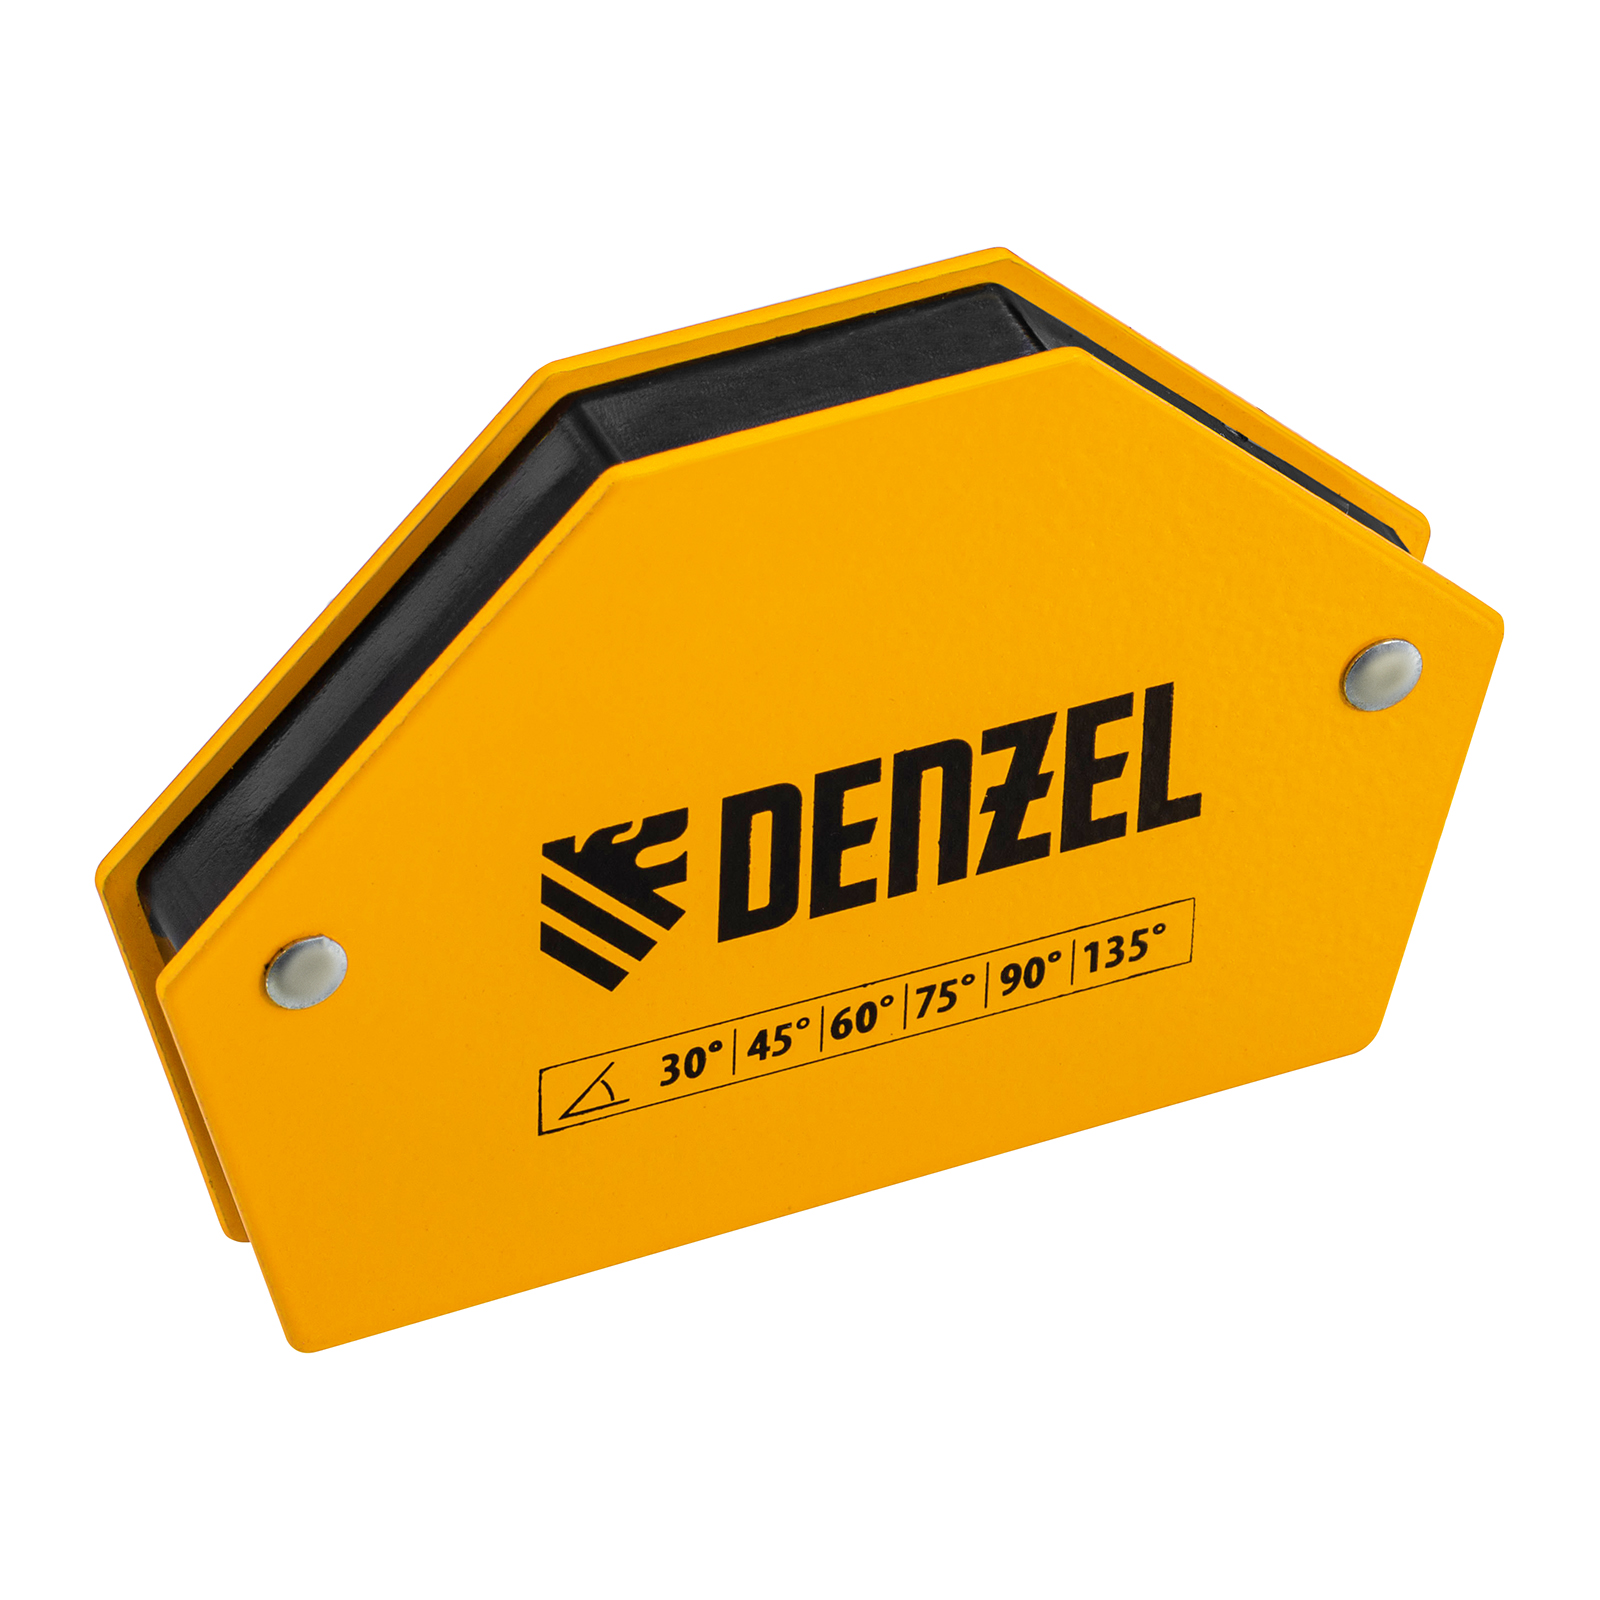 Фиксатор магнитный для сварочных работ DENZEL усилие 25 LB, 30х45х60х75х90х135 град. 97552 магнитный фиксатор для сварочных работ denzel